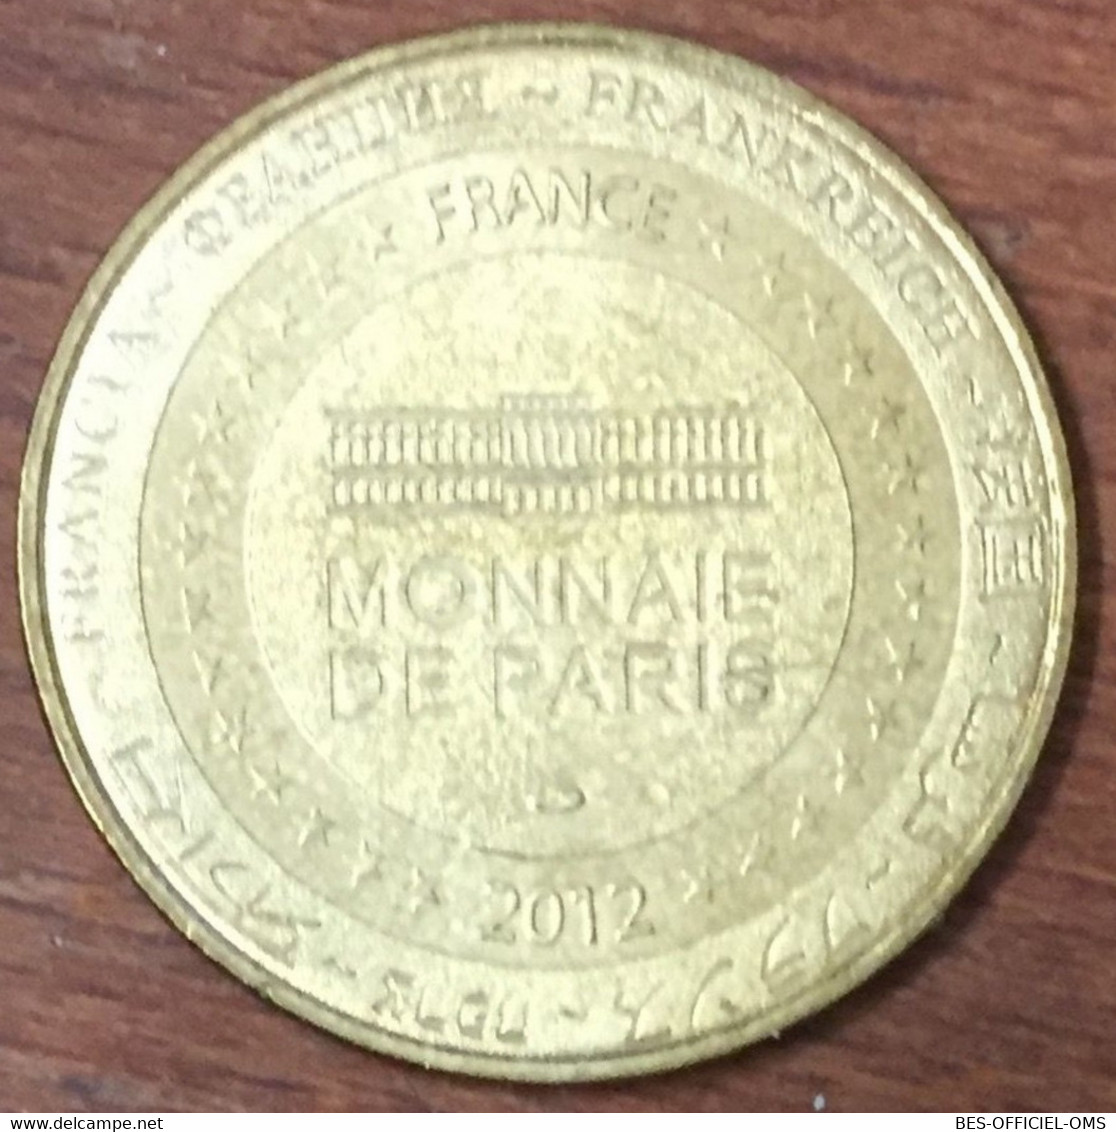 44 BATZ SUR MER TERRE ET MER NE CRAINS MDP 2012 MÉDAILLE MONNAIE DE PARIS JETON TOURISTIQUE MEDALS COINS TOKENS - 2012